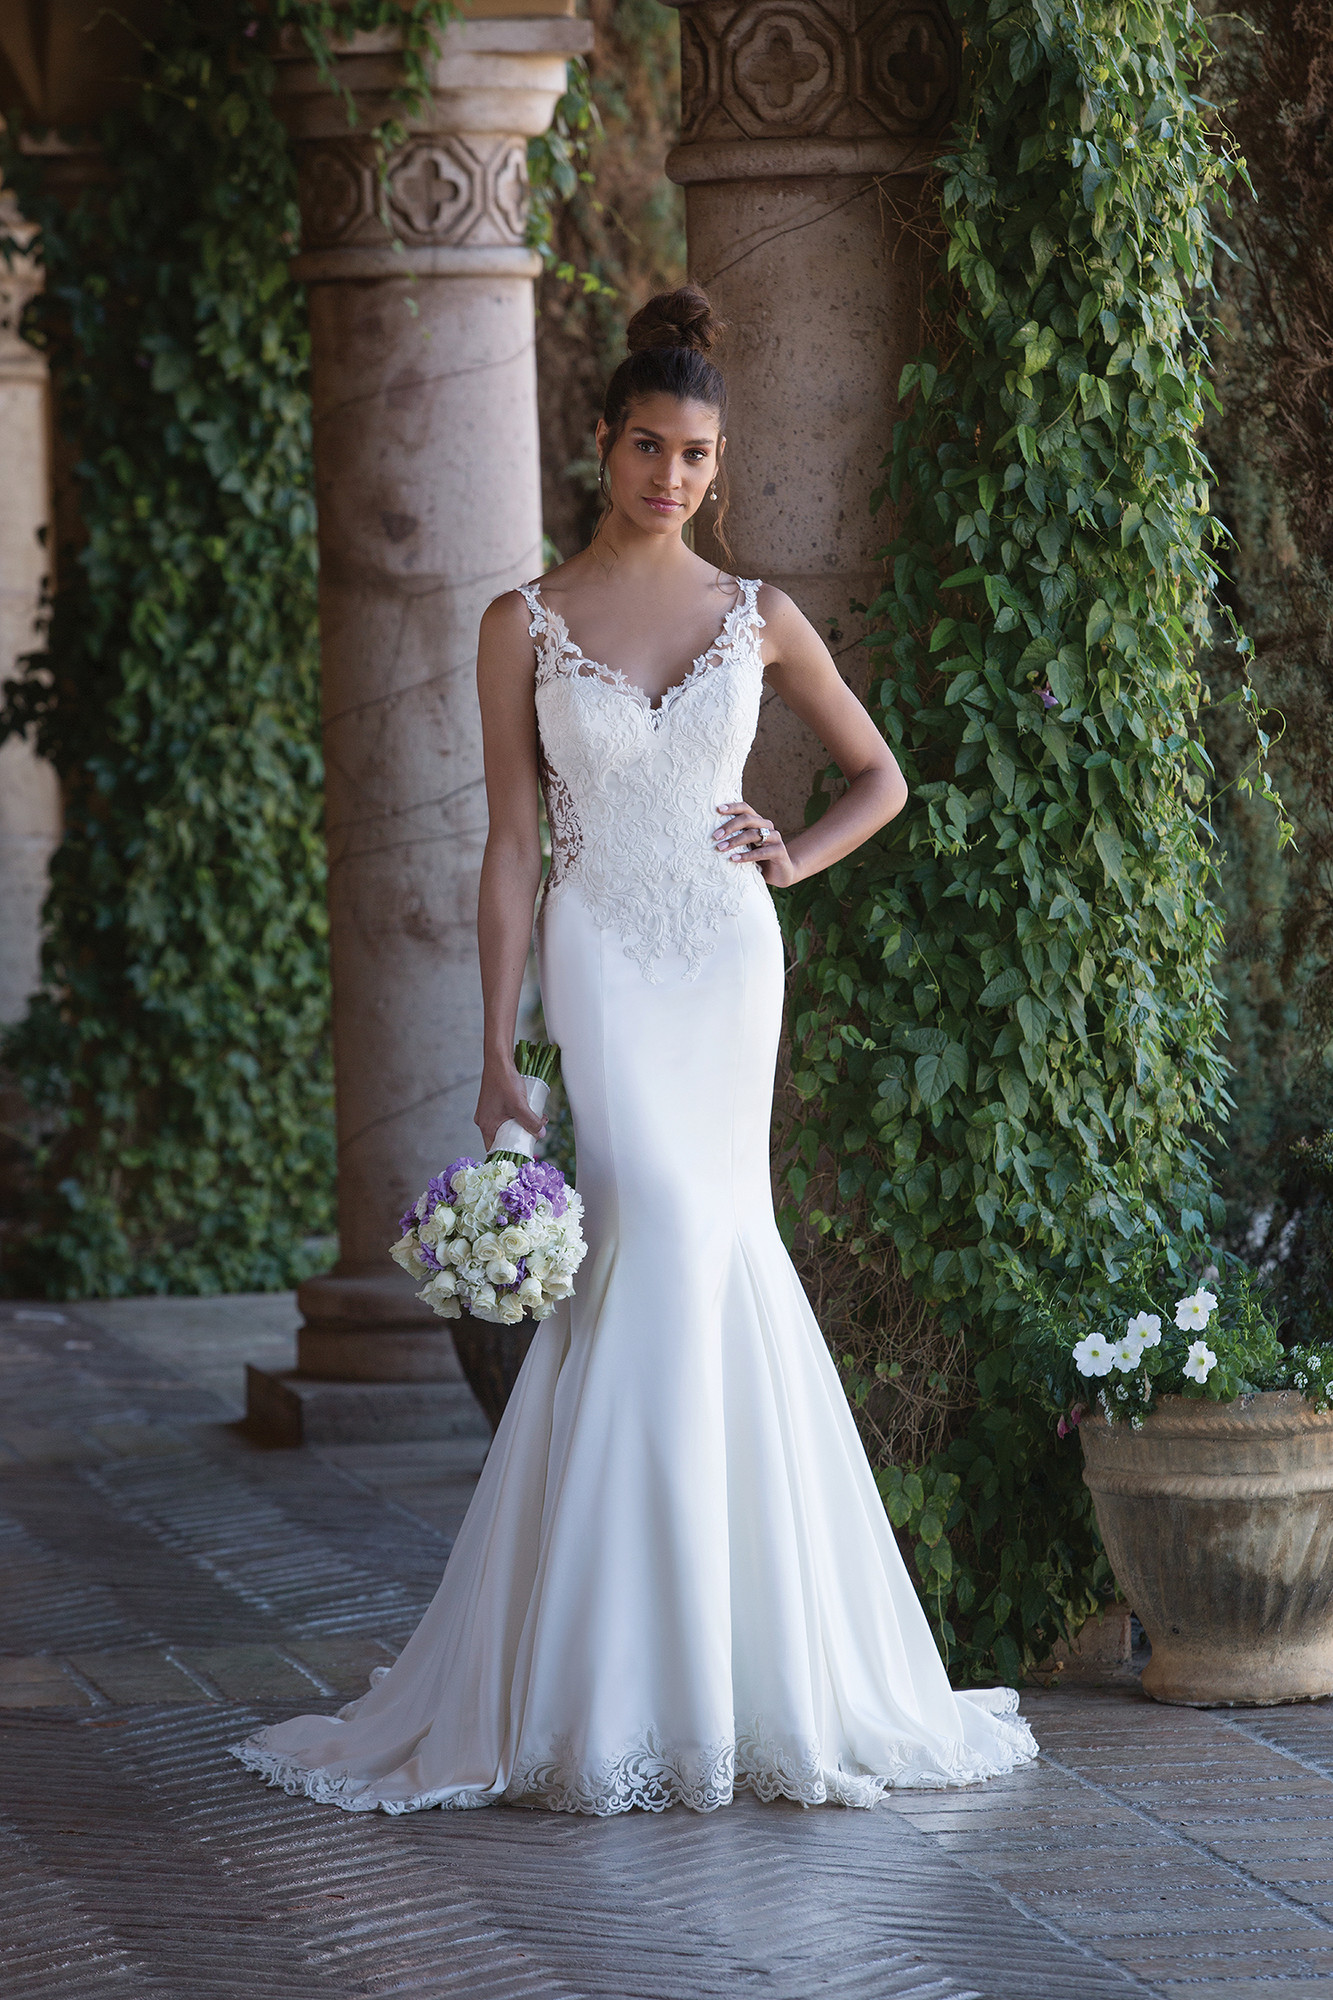 Wedding Dresses by Sincerity Bridal 4015 Weddingwire ca